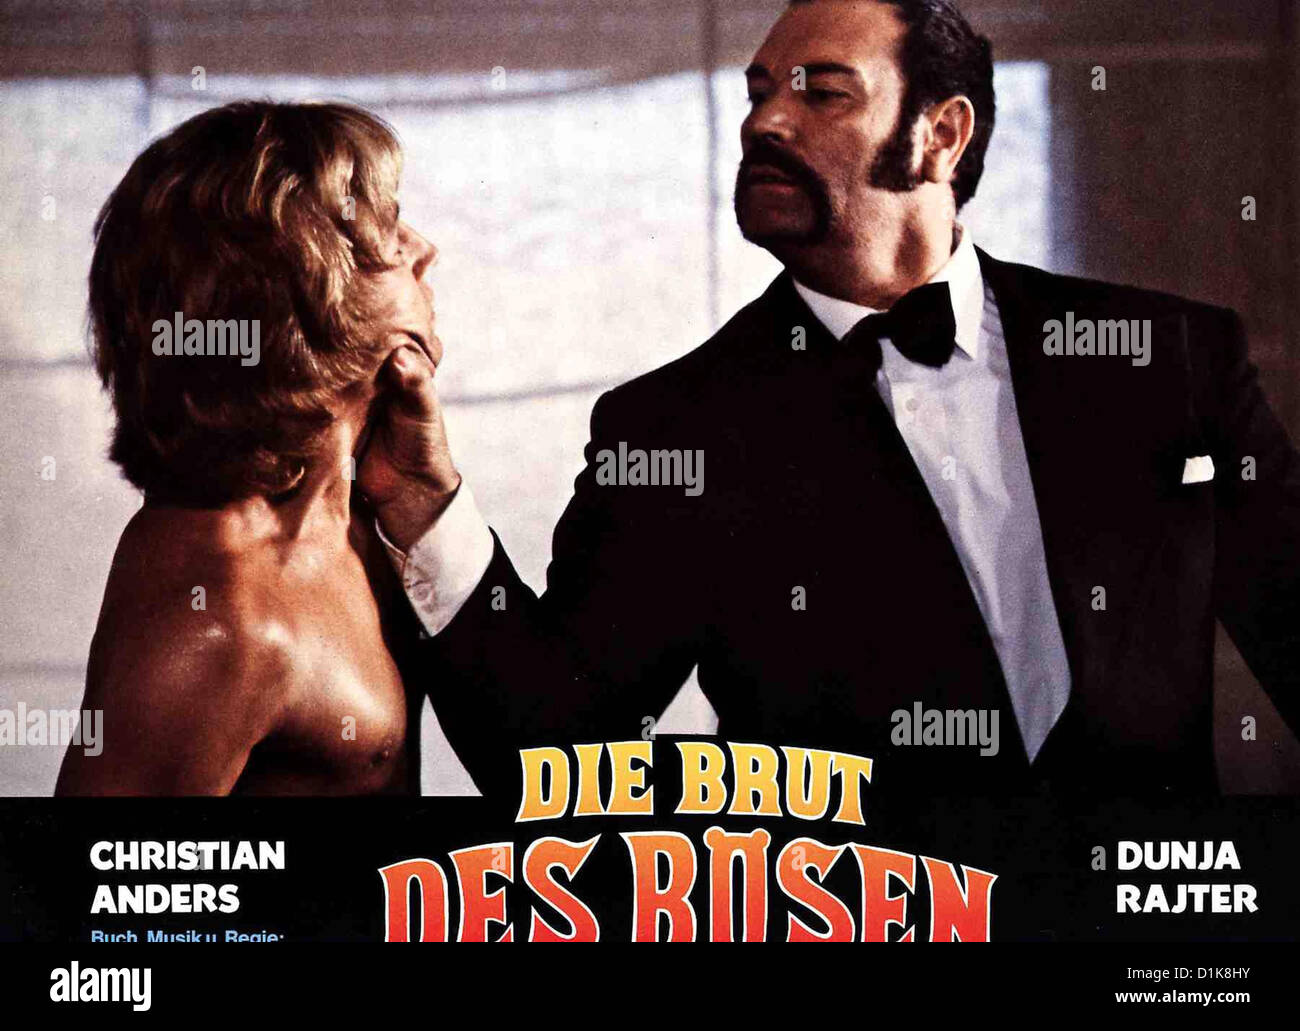 Die Brut Des Boesen   Brut Des Bösen, Die   Christian Anders, ? *** Local Caption *** 1979  -- Stock Photo